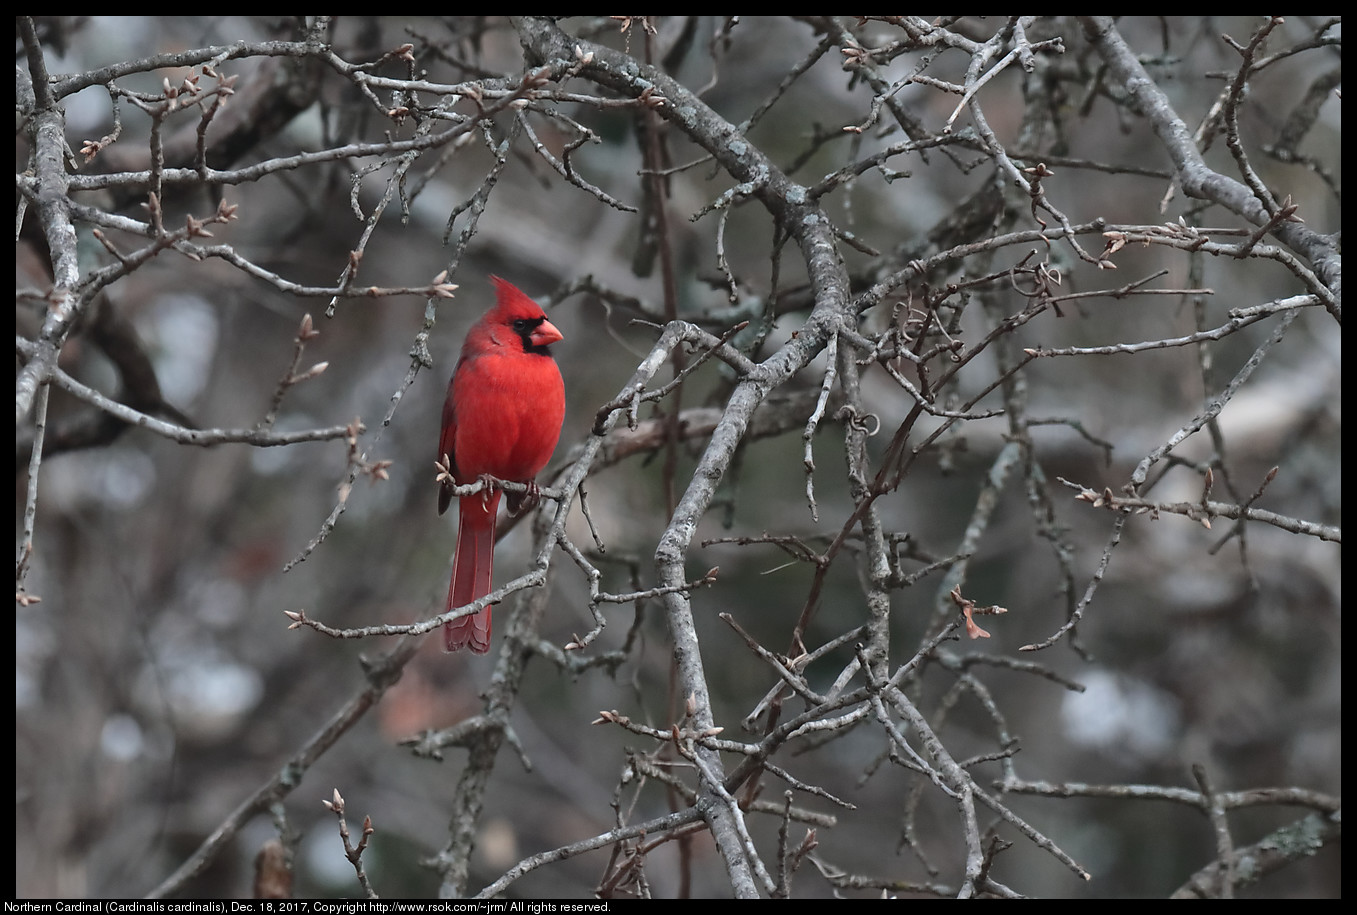 Northern Cardinal (Cardinalis cardinalis), Dec. 18, 2017